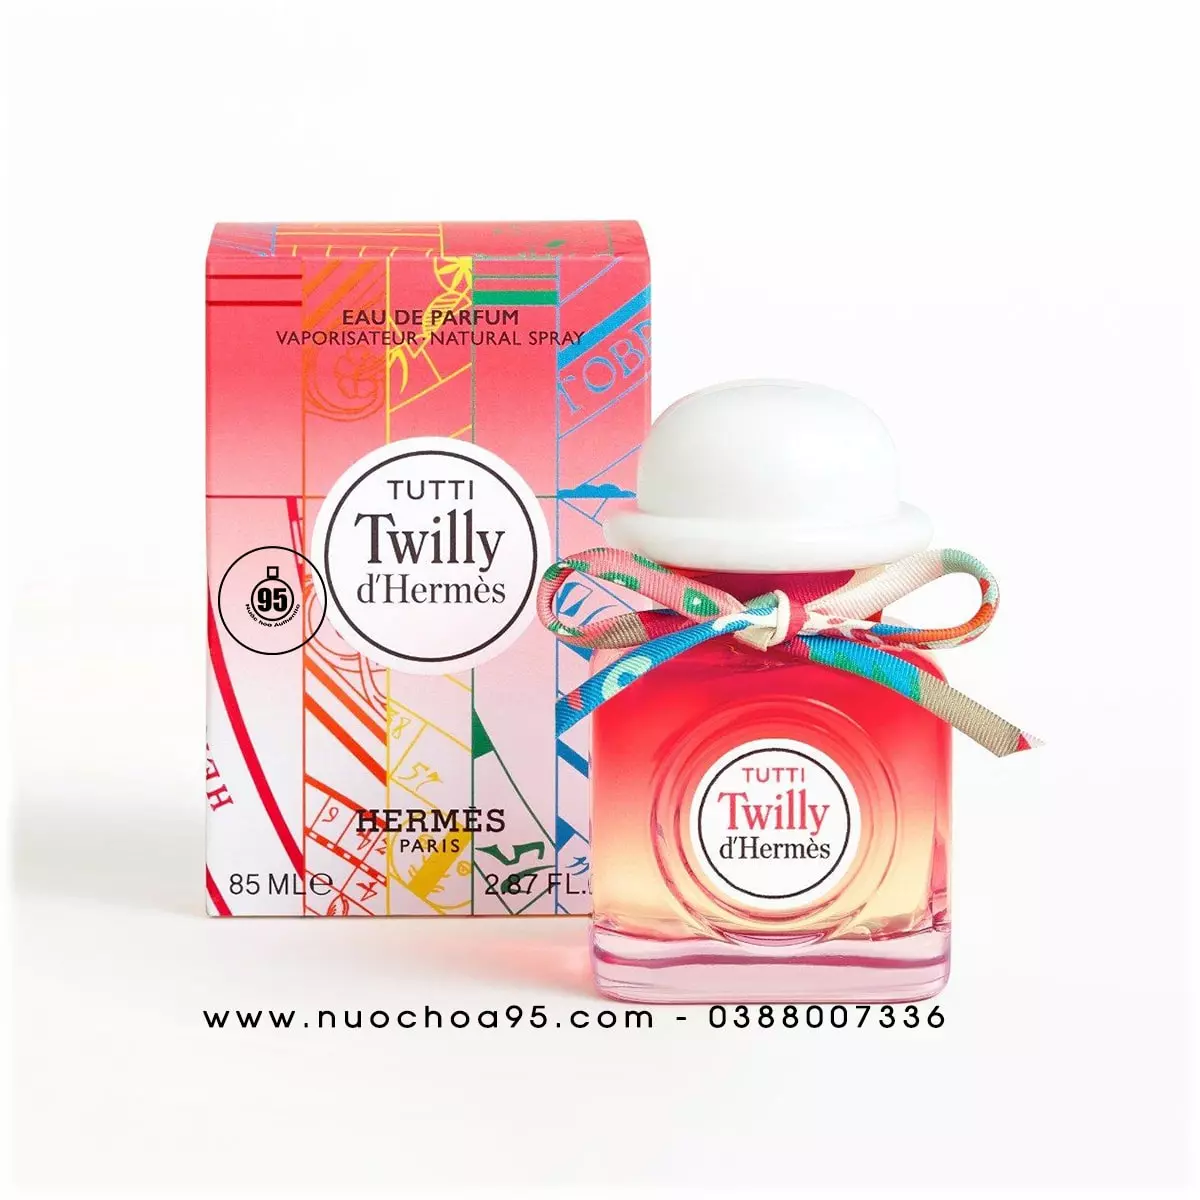 Nước hoa Twilly d'Hermès Tutti